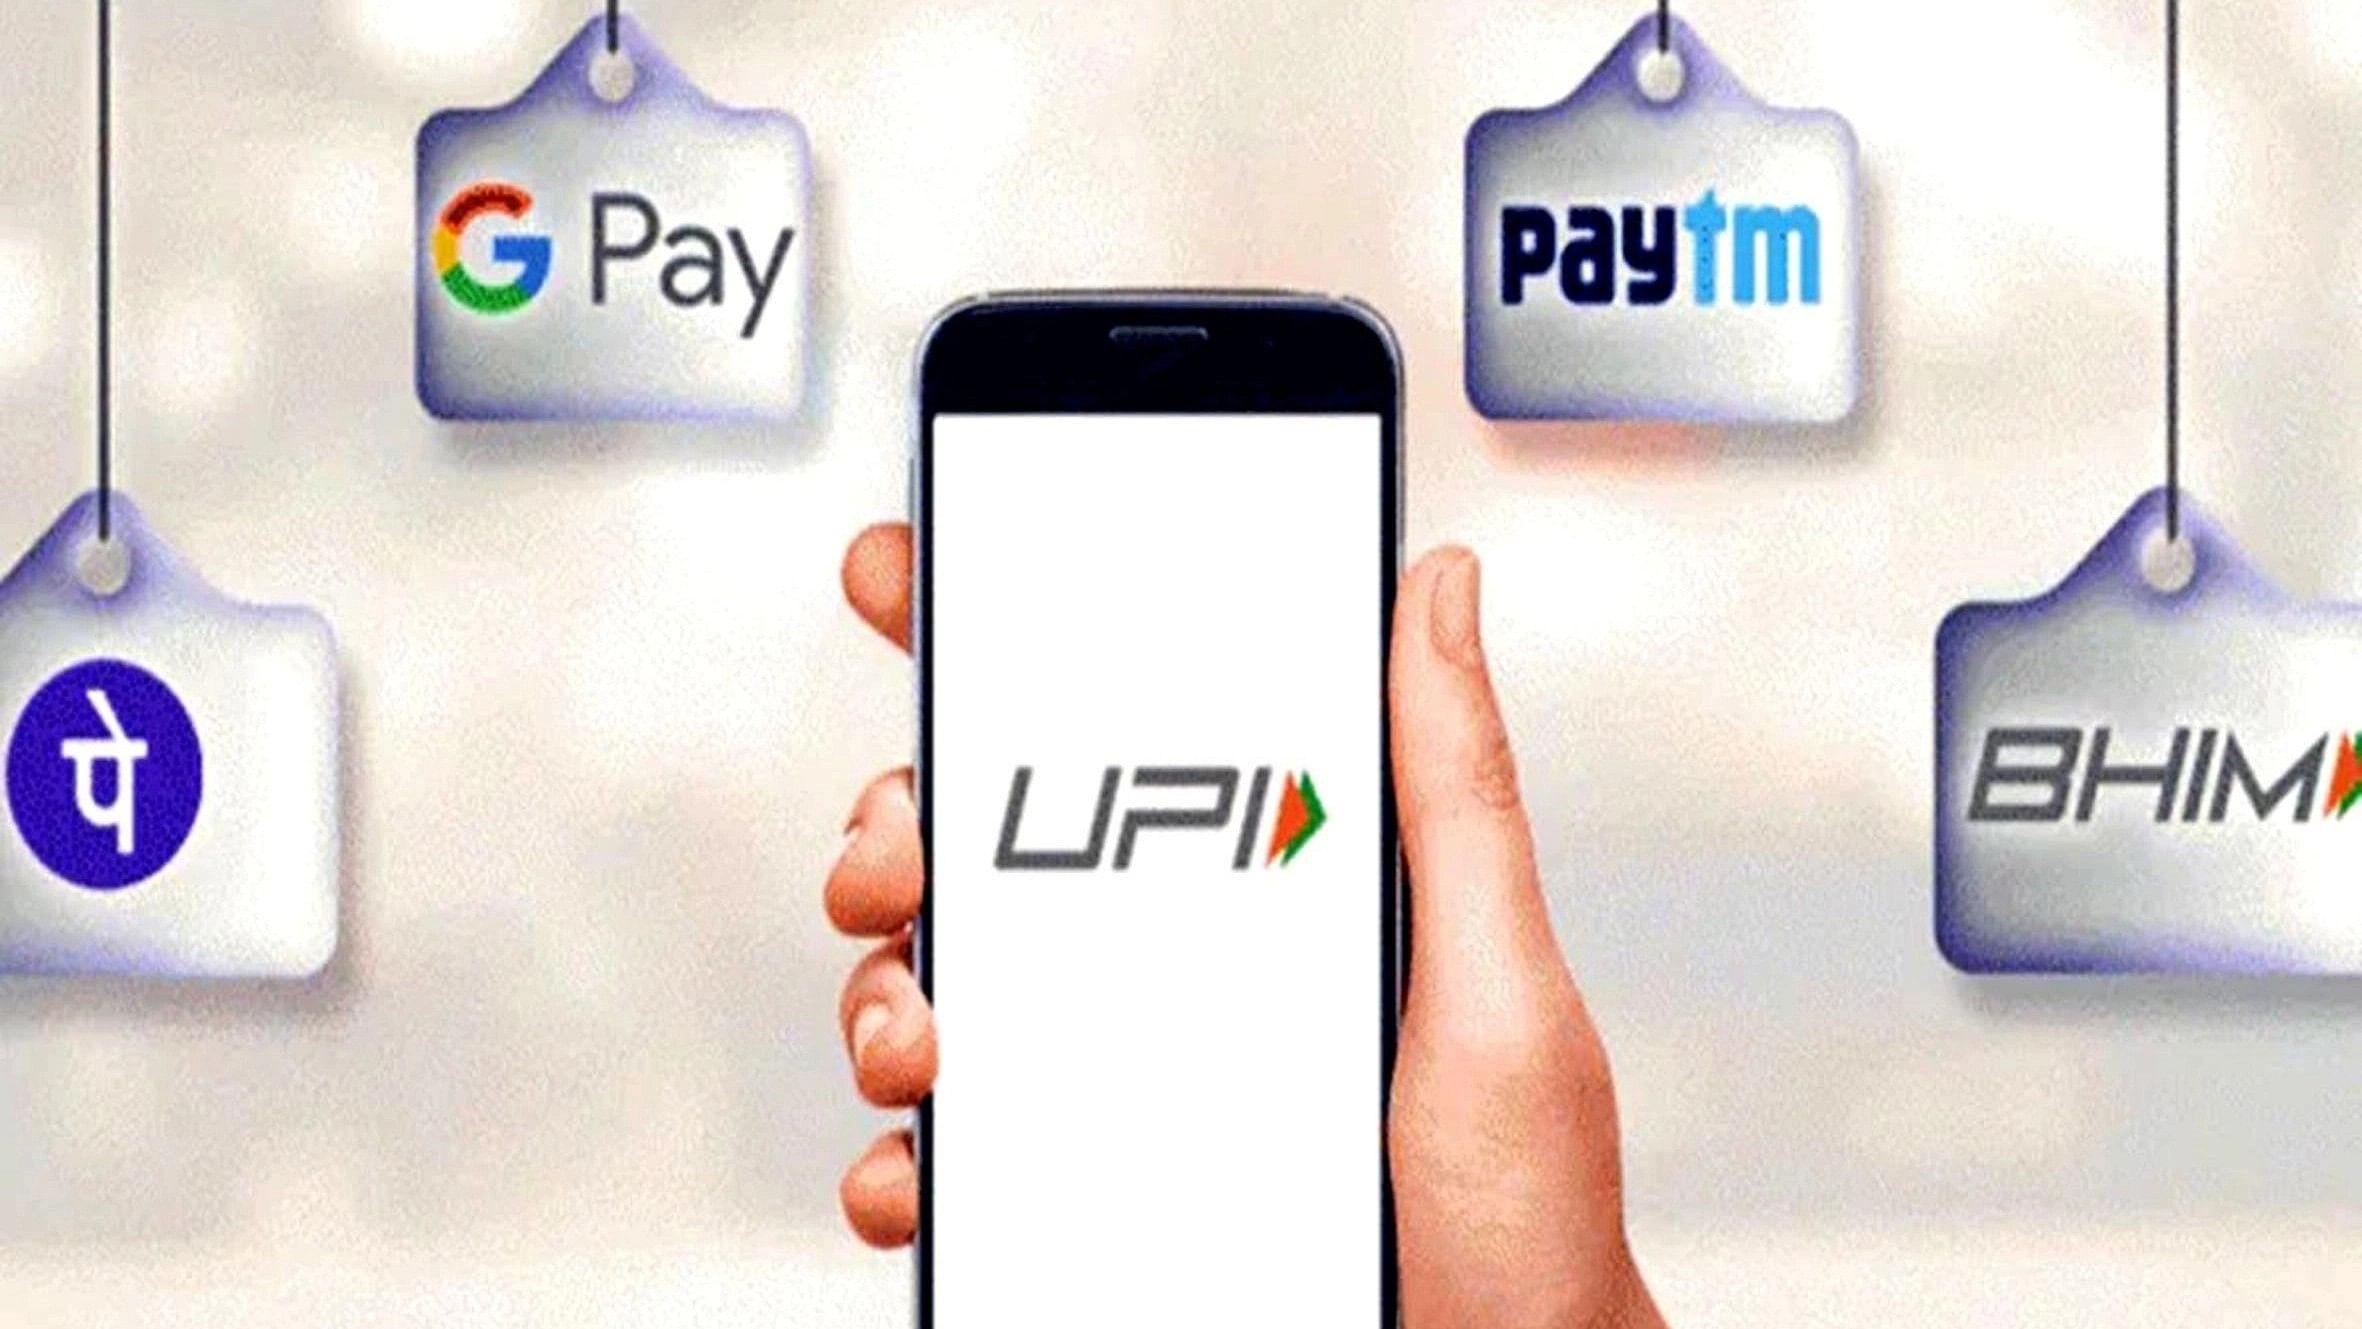 <div class="paragraphs"><p>Representative image of UPI payment.</p></div>